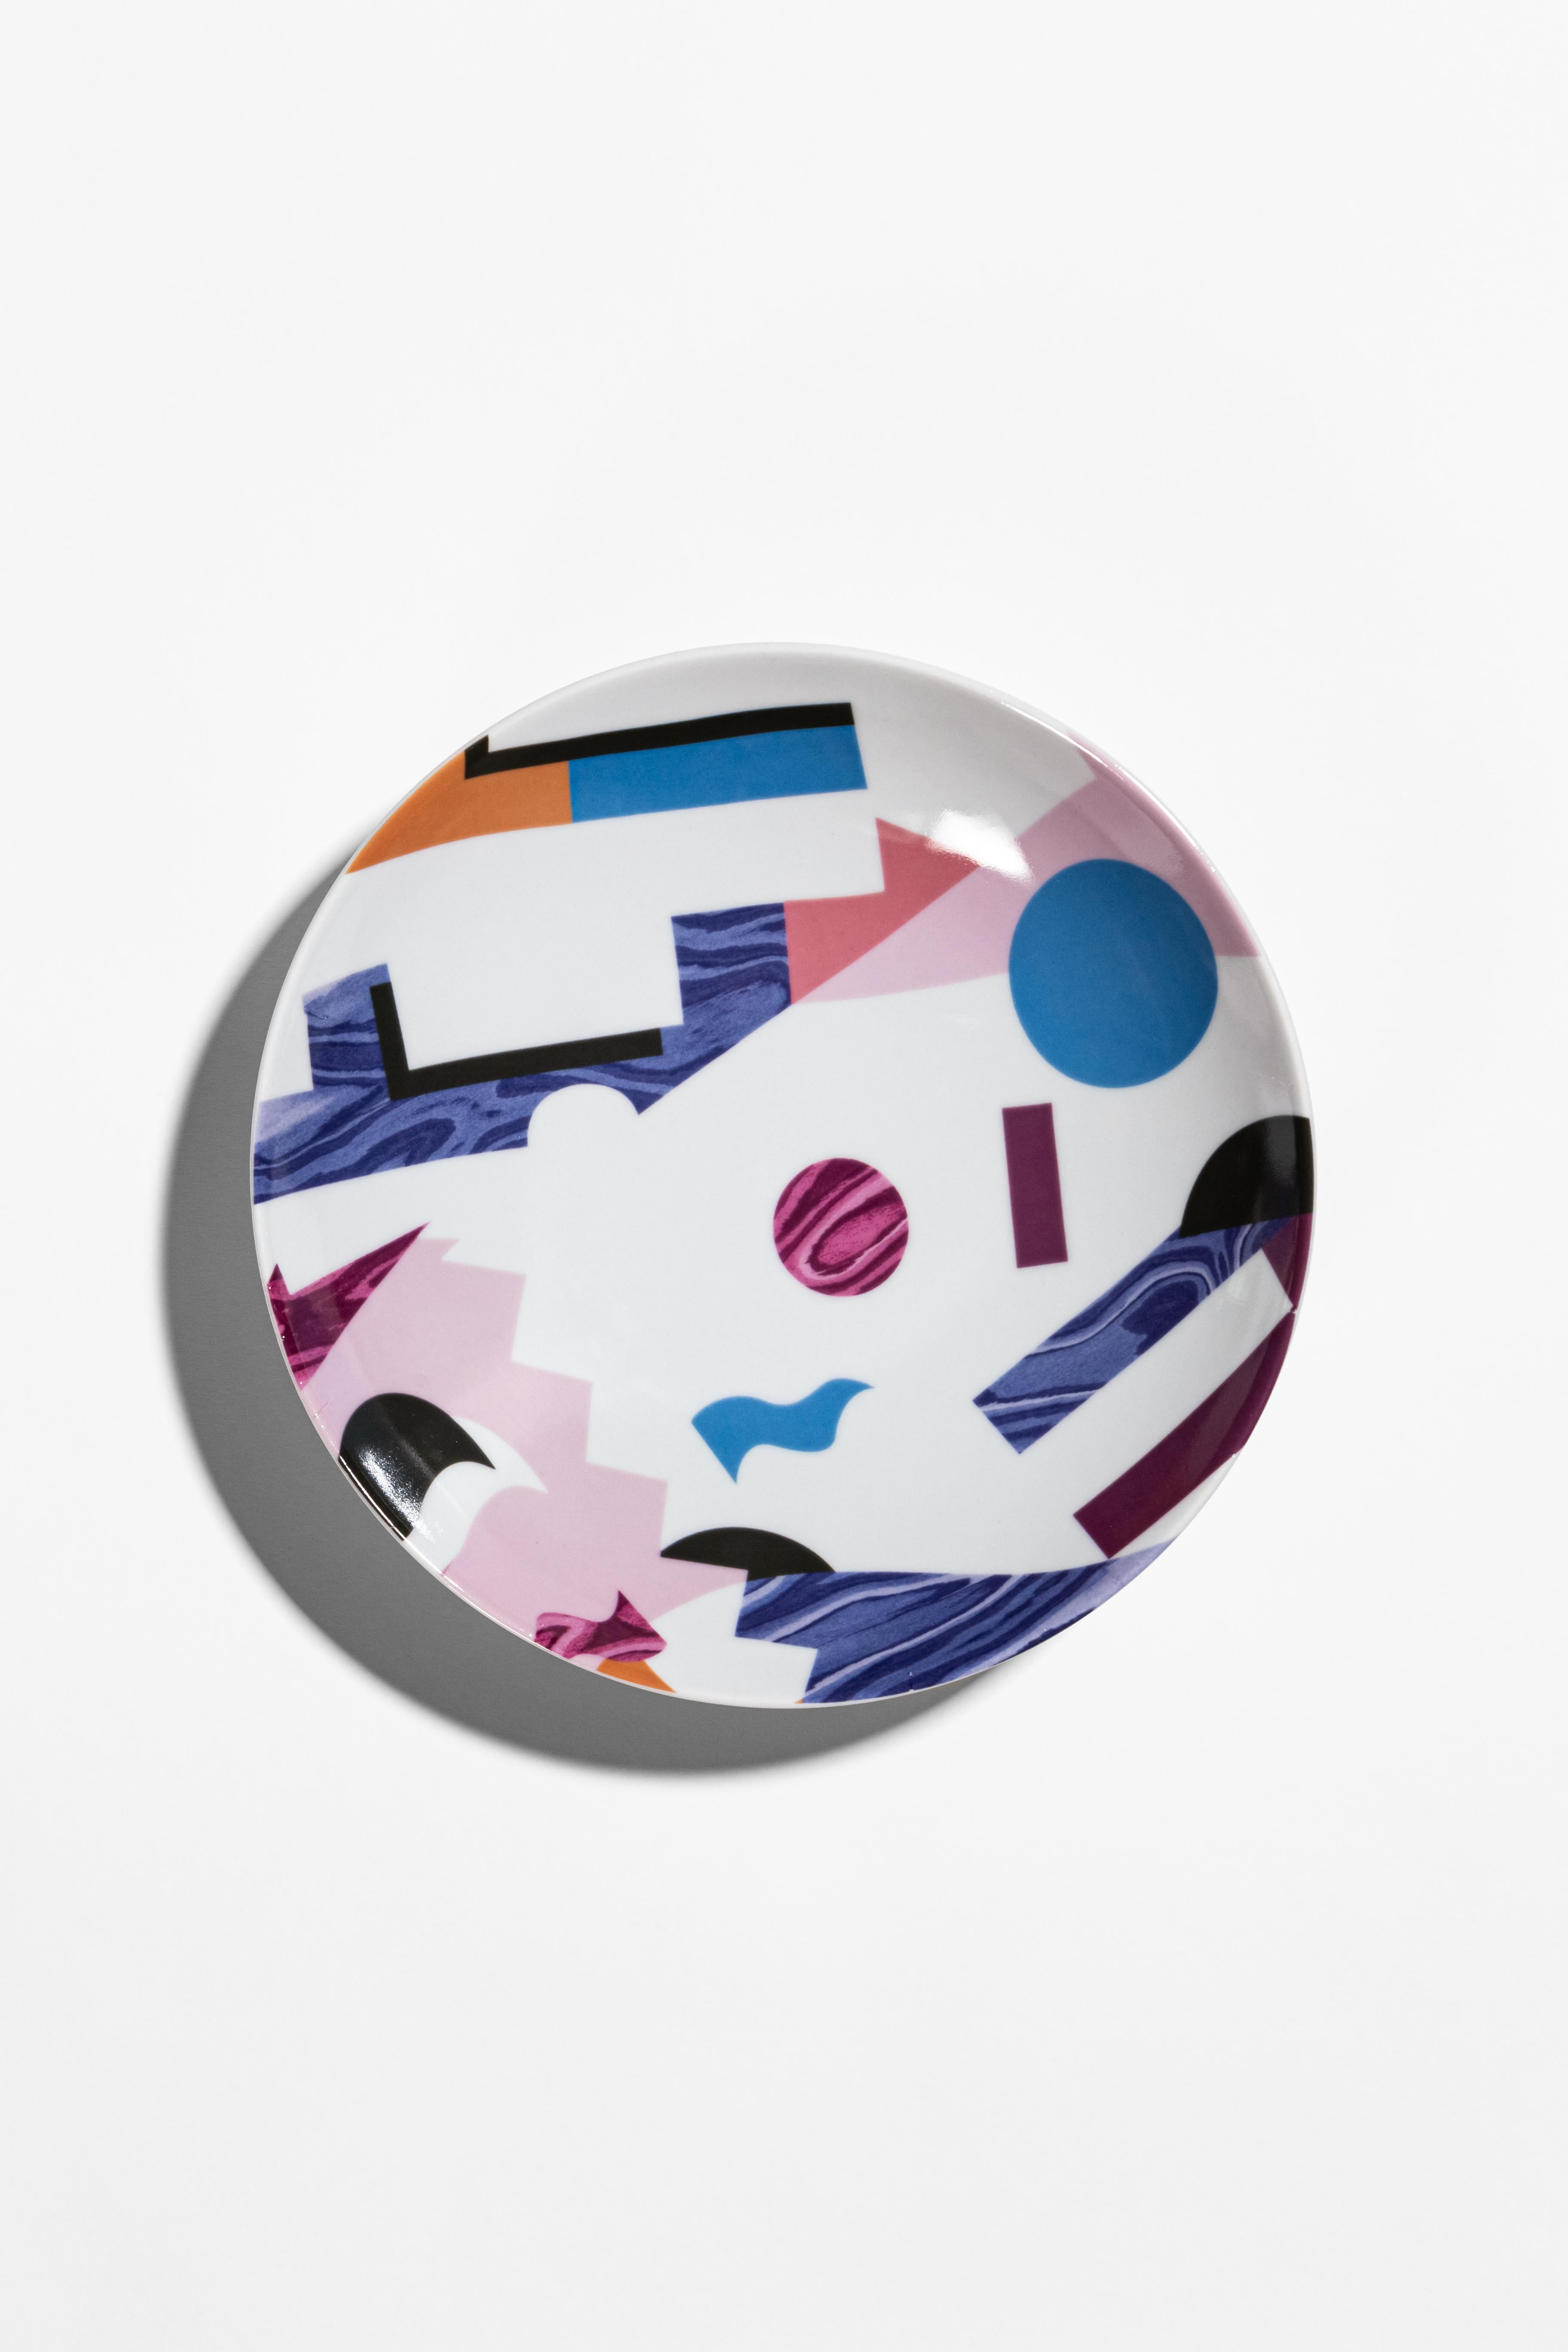 Alchimie, Six Contemporary Porcelain soup plates with Decorative Design For Sale 3